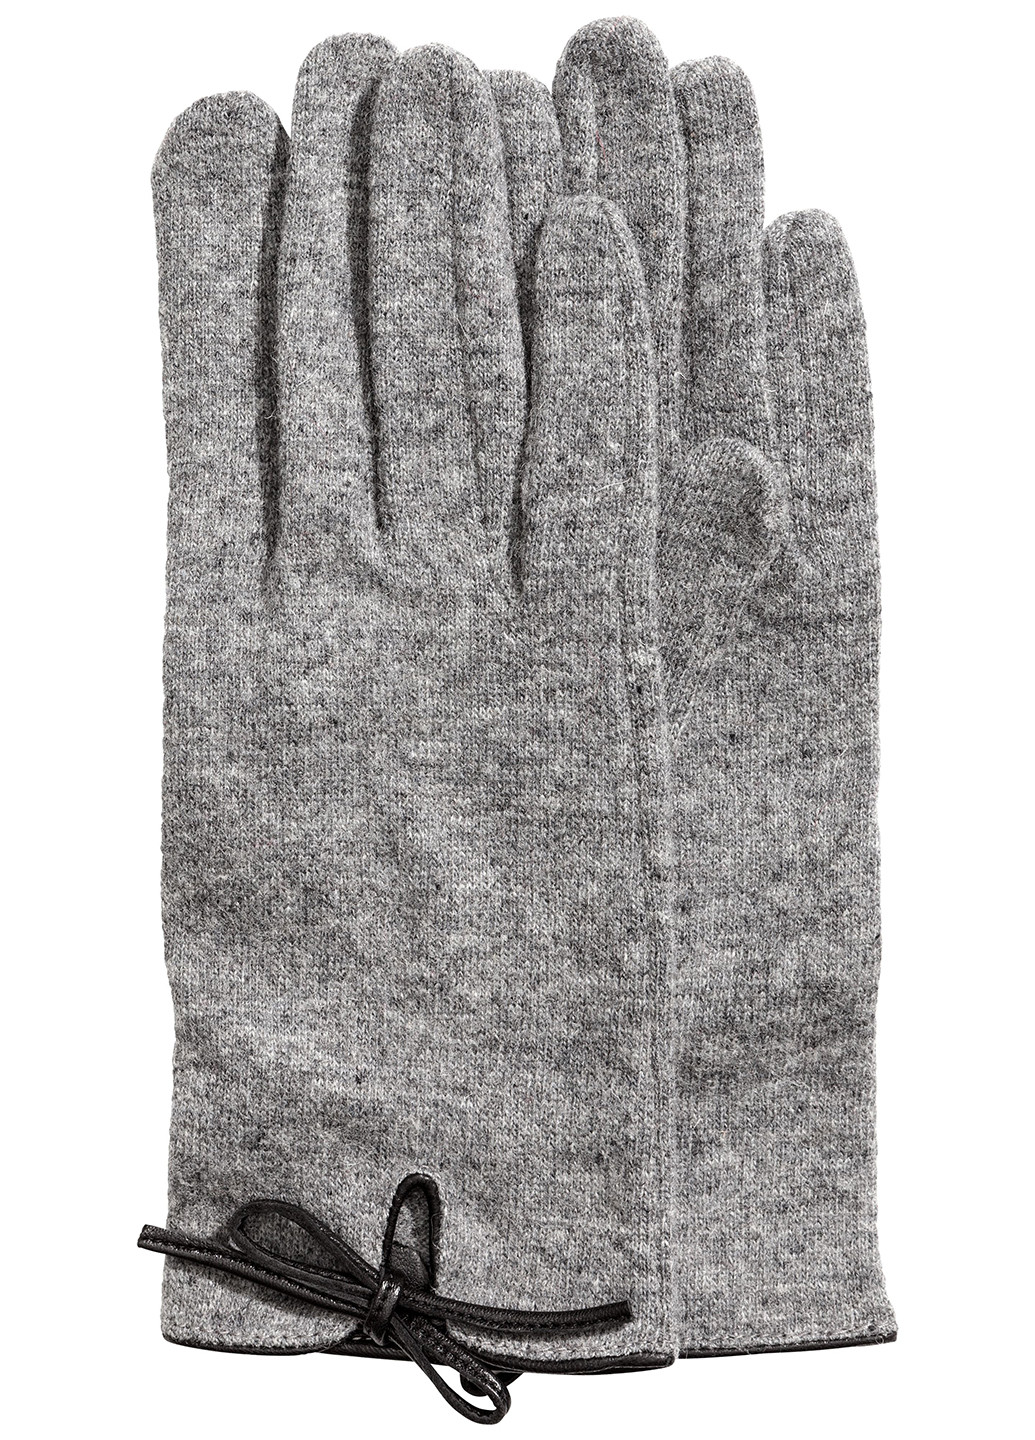 Перчатки H&M меланжи серые кэжуалы шерсть